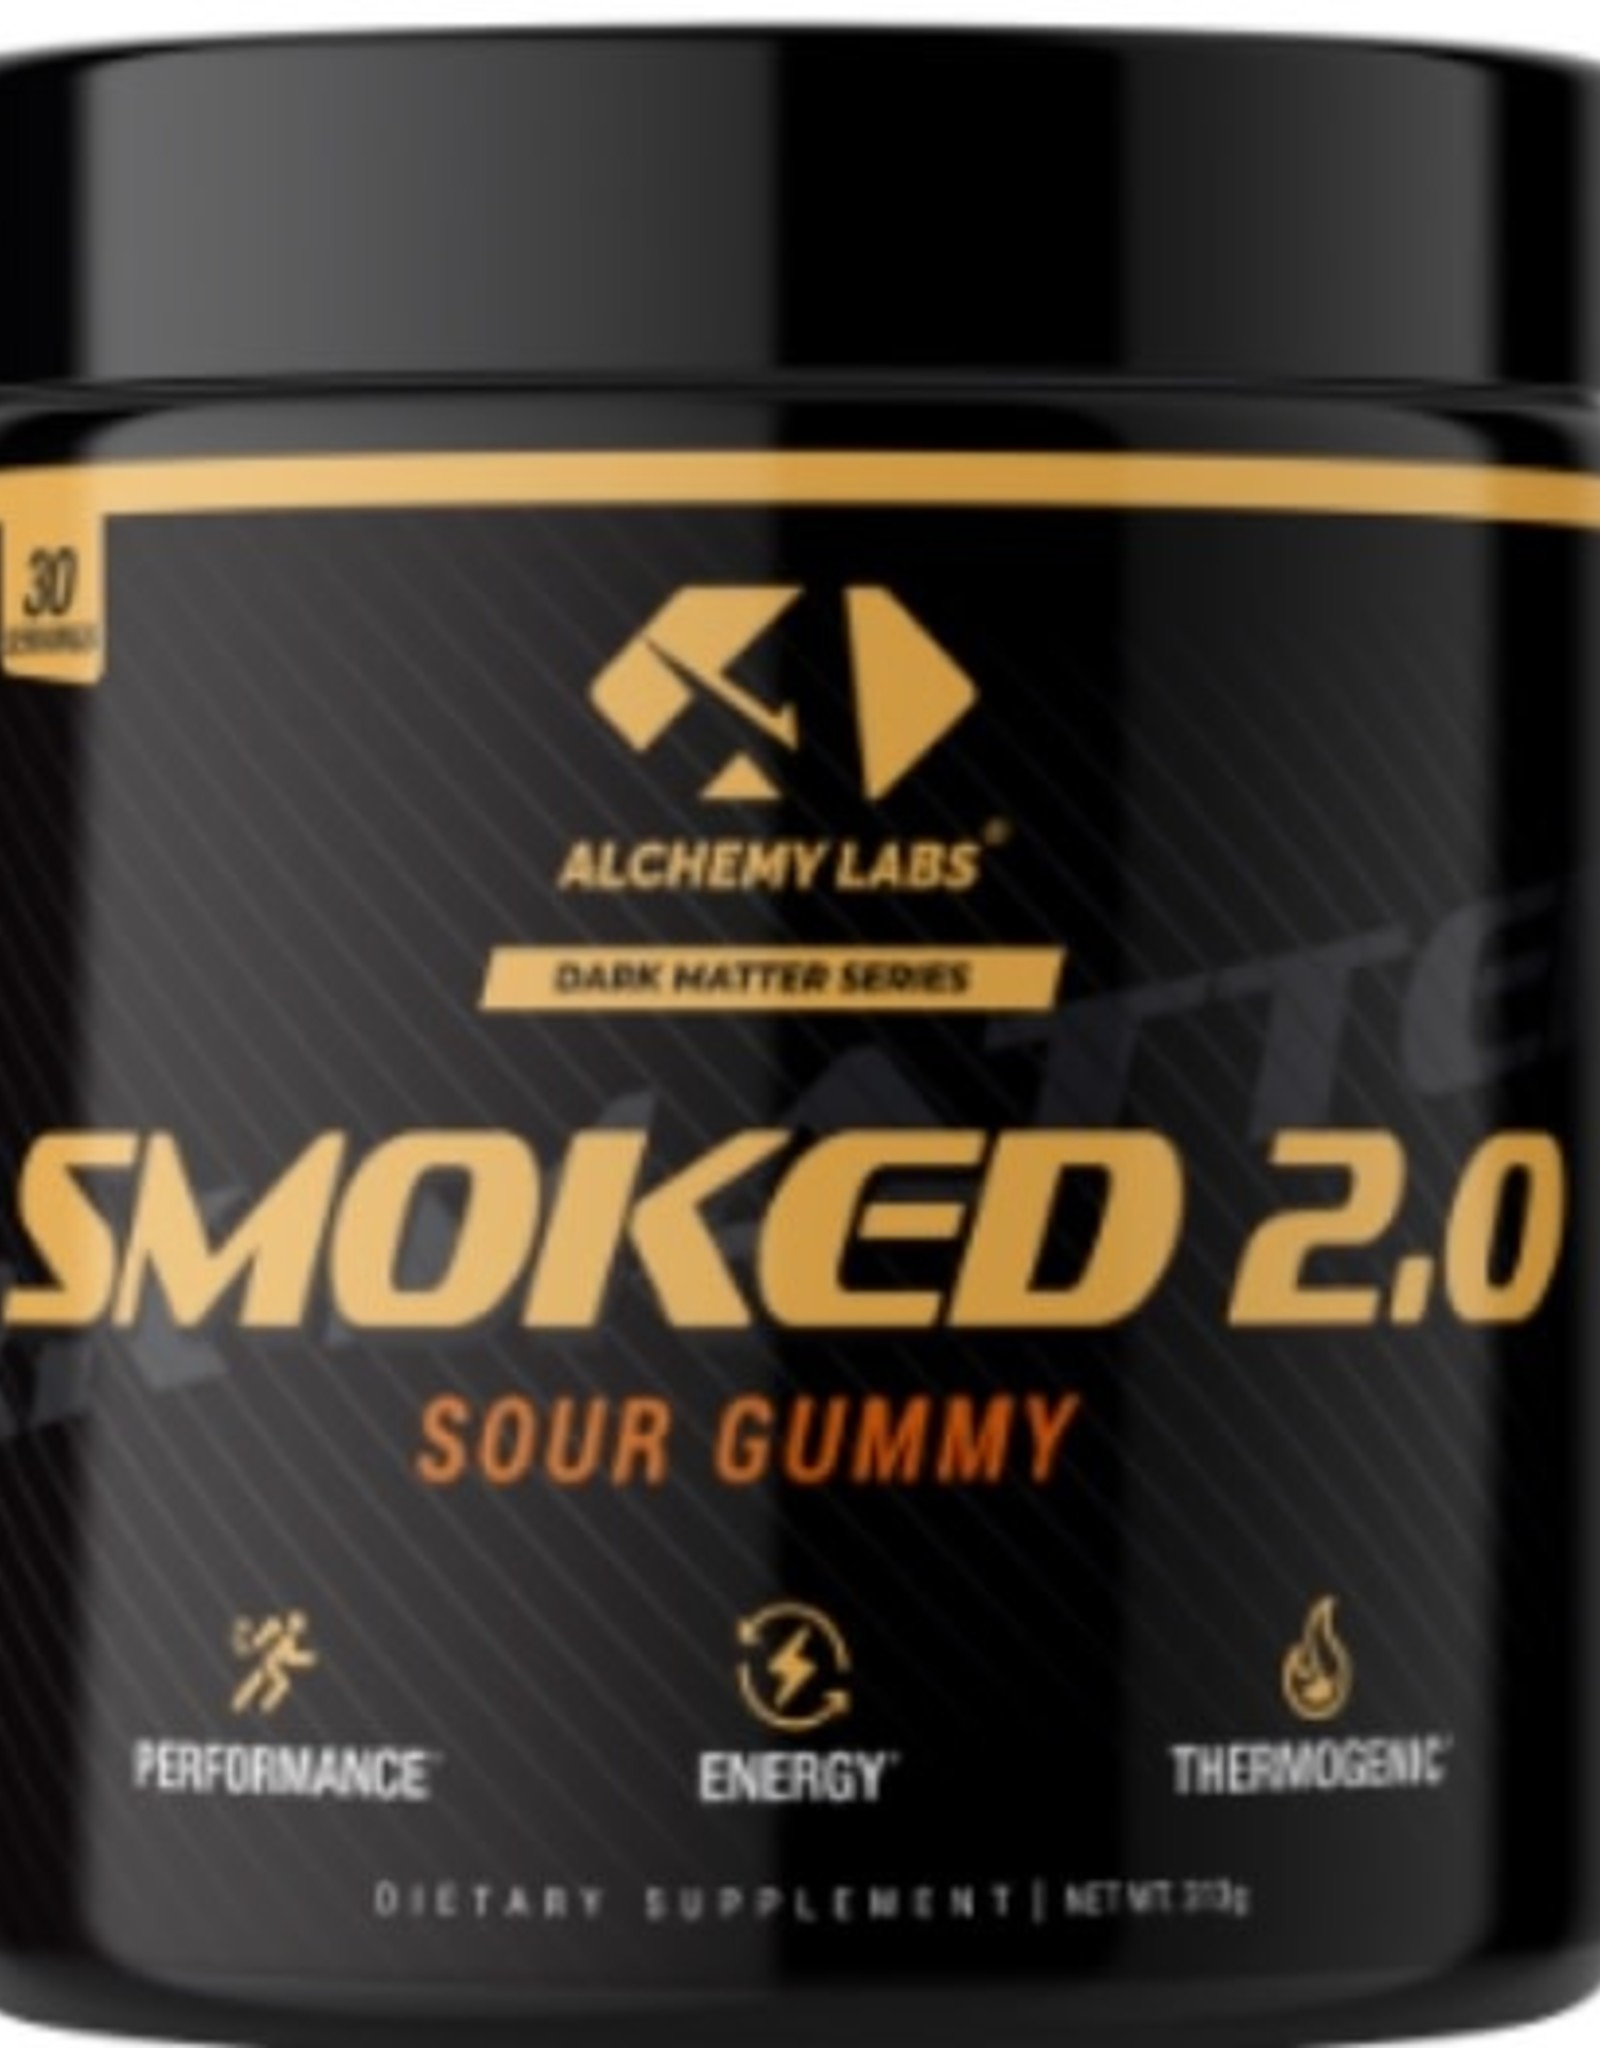 Alchemy labs Smoked 2.0- sour gummy